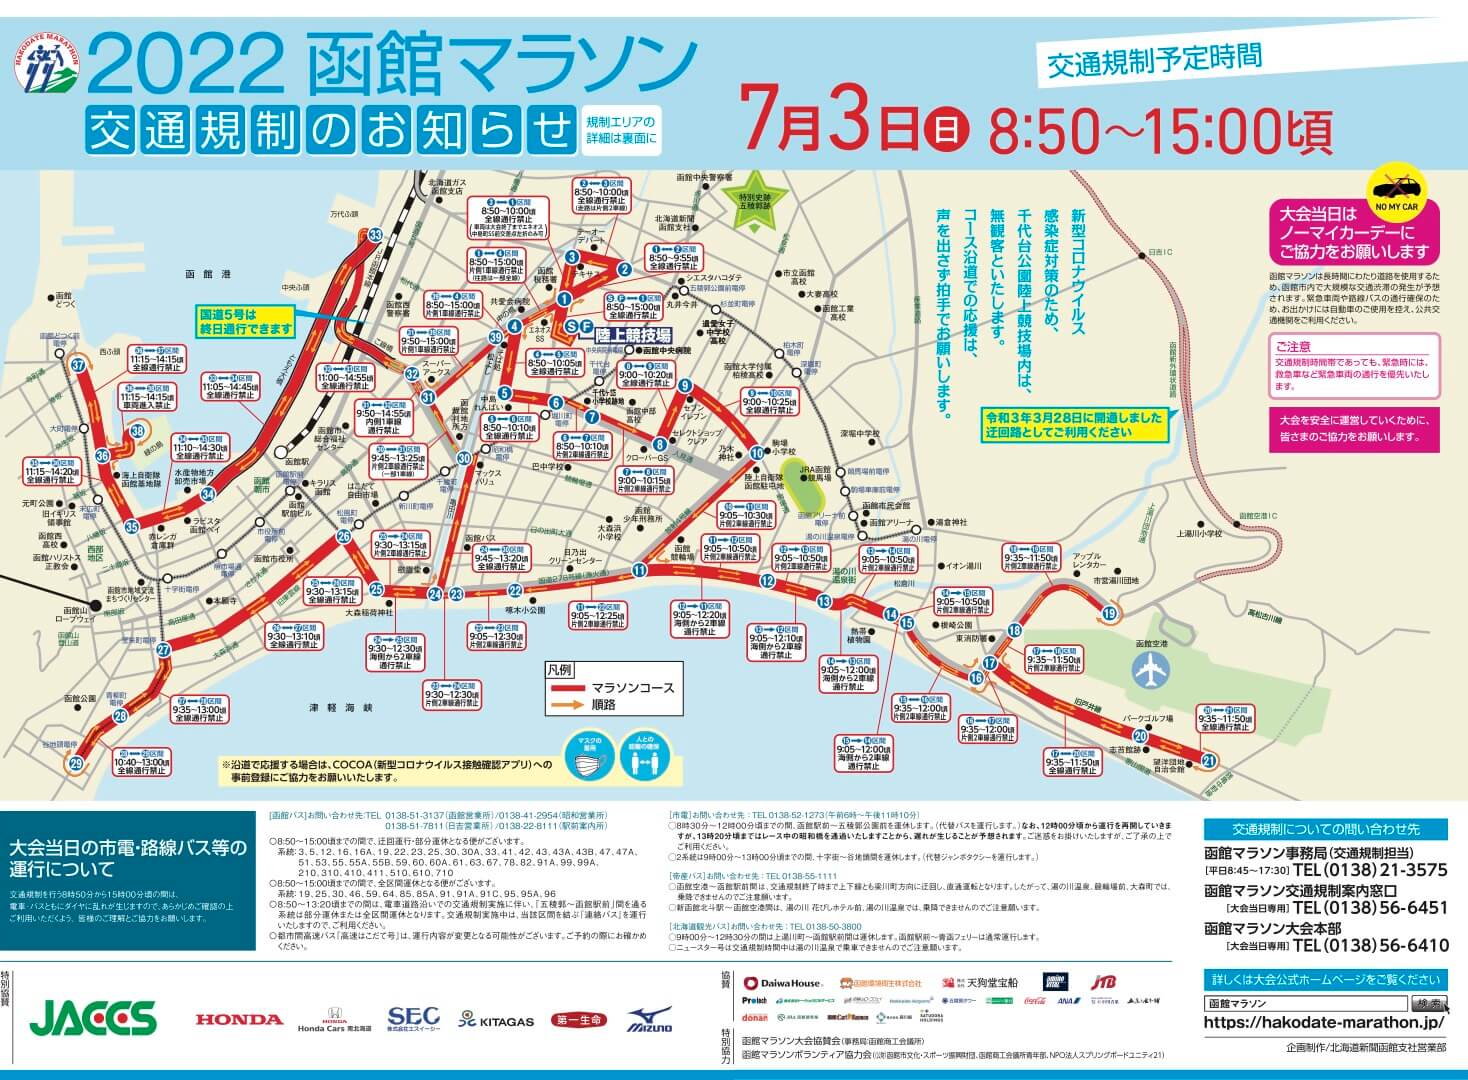 2022函館マラソン交通規制のお知らせ